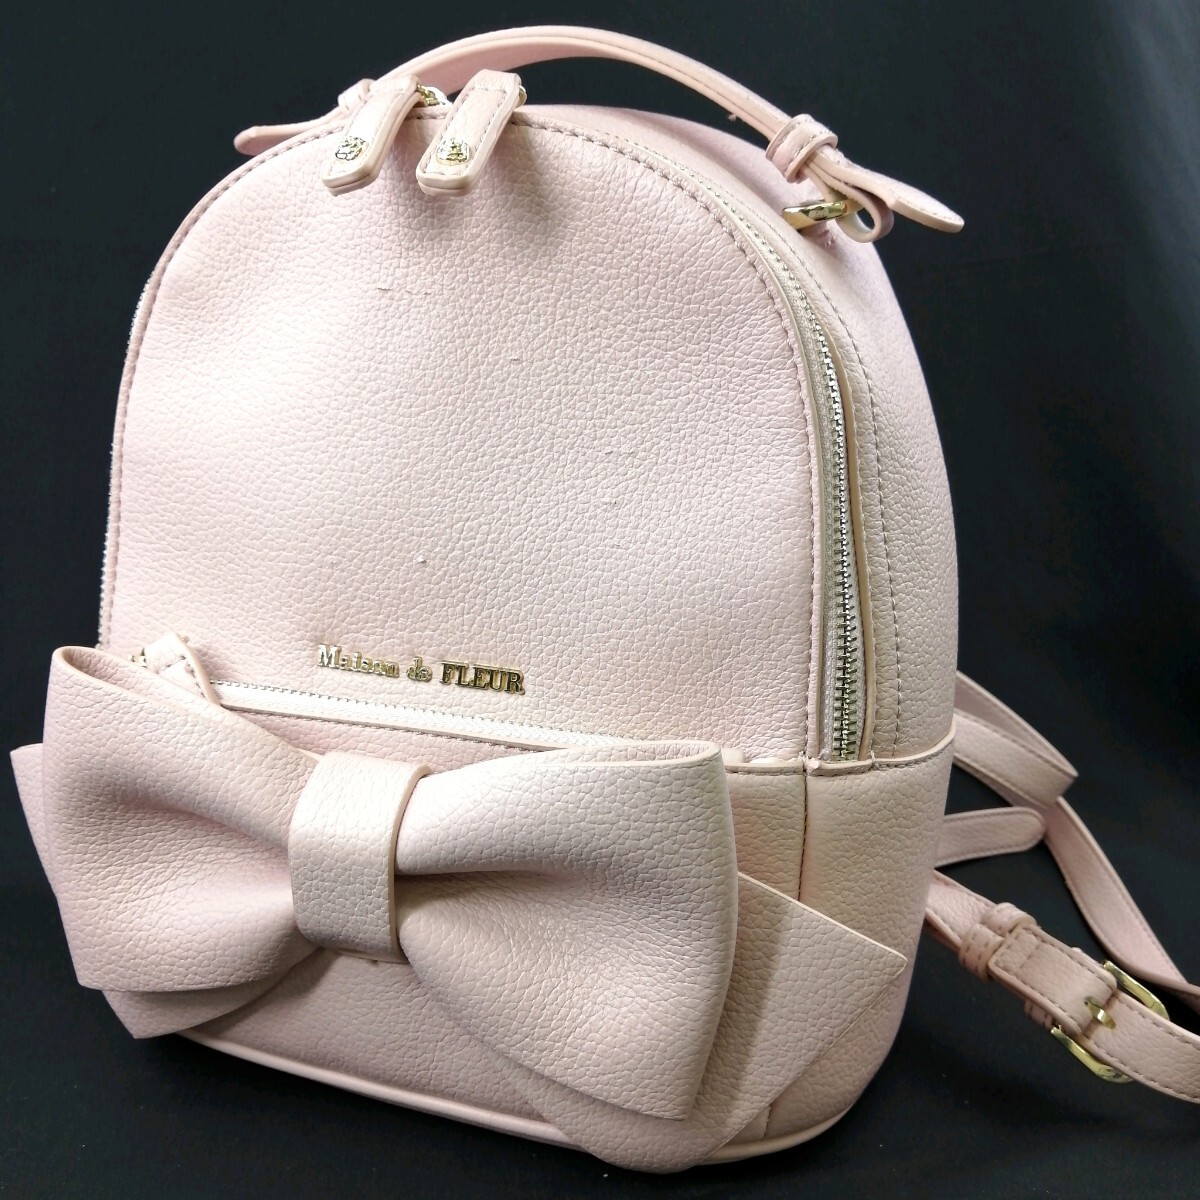 H ◎【商品ランク:B】メゾンドフルール Maison de FLEUR ロゴメタル 型押し レザー リュックサック バックパック 肩掛け 婦人鞄 ピンク系の画像1